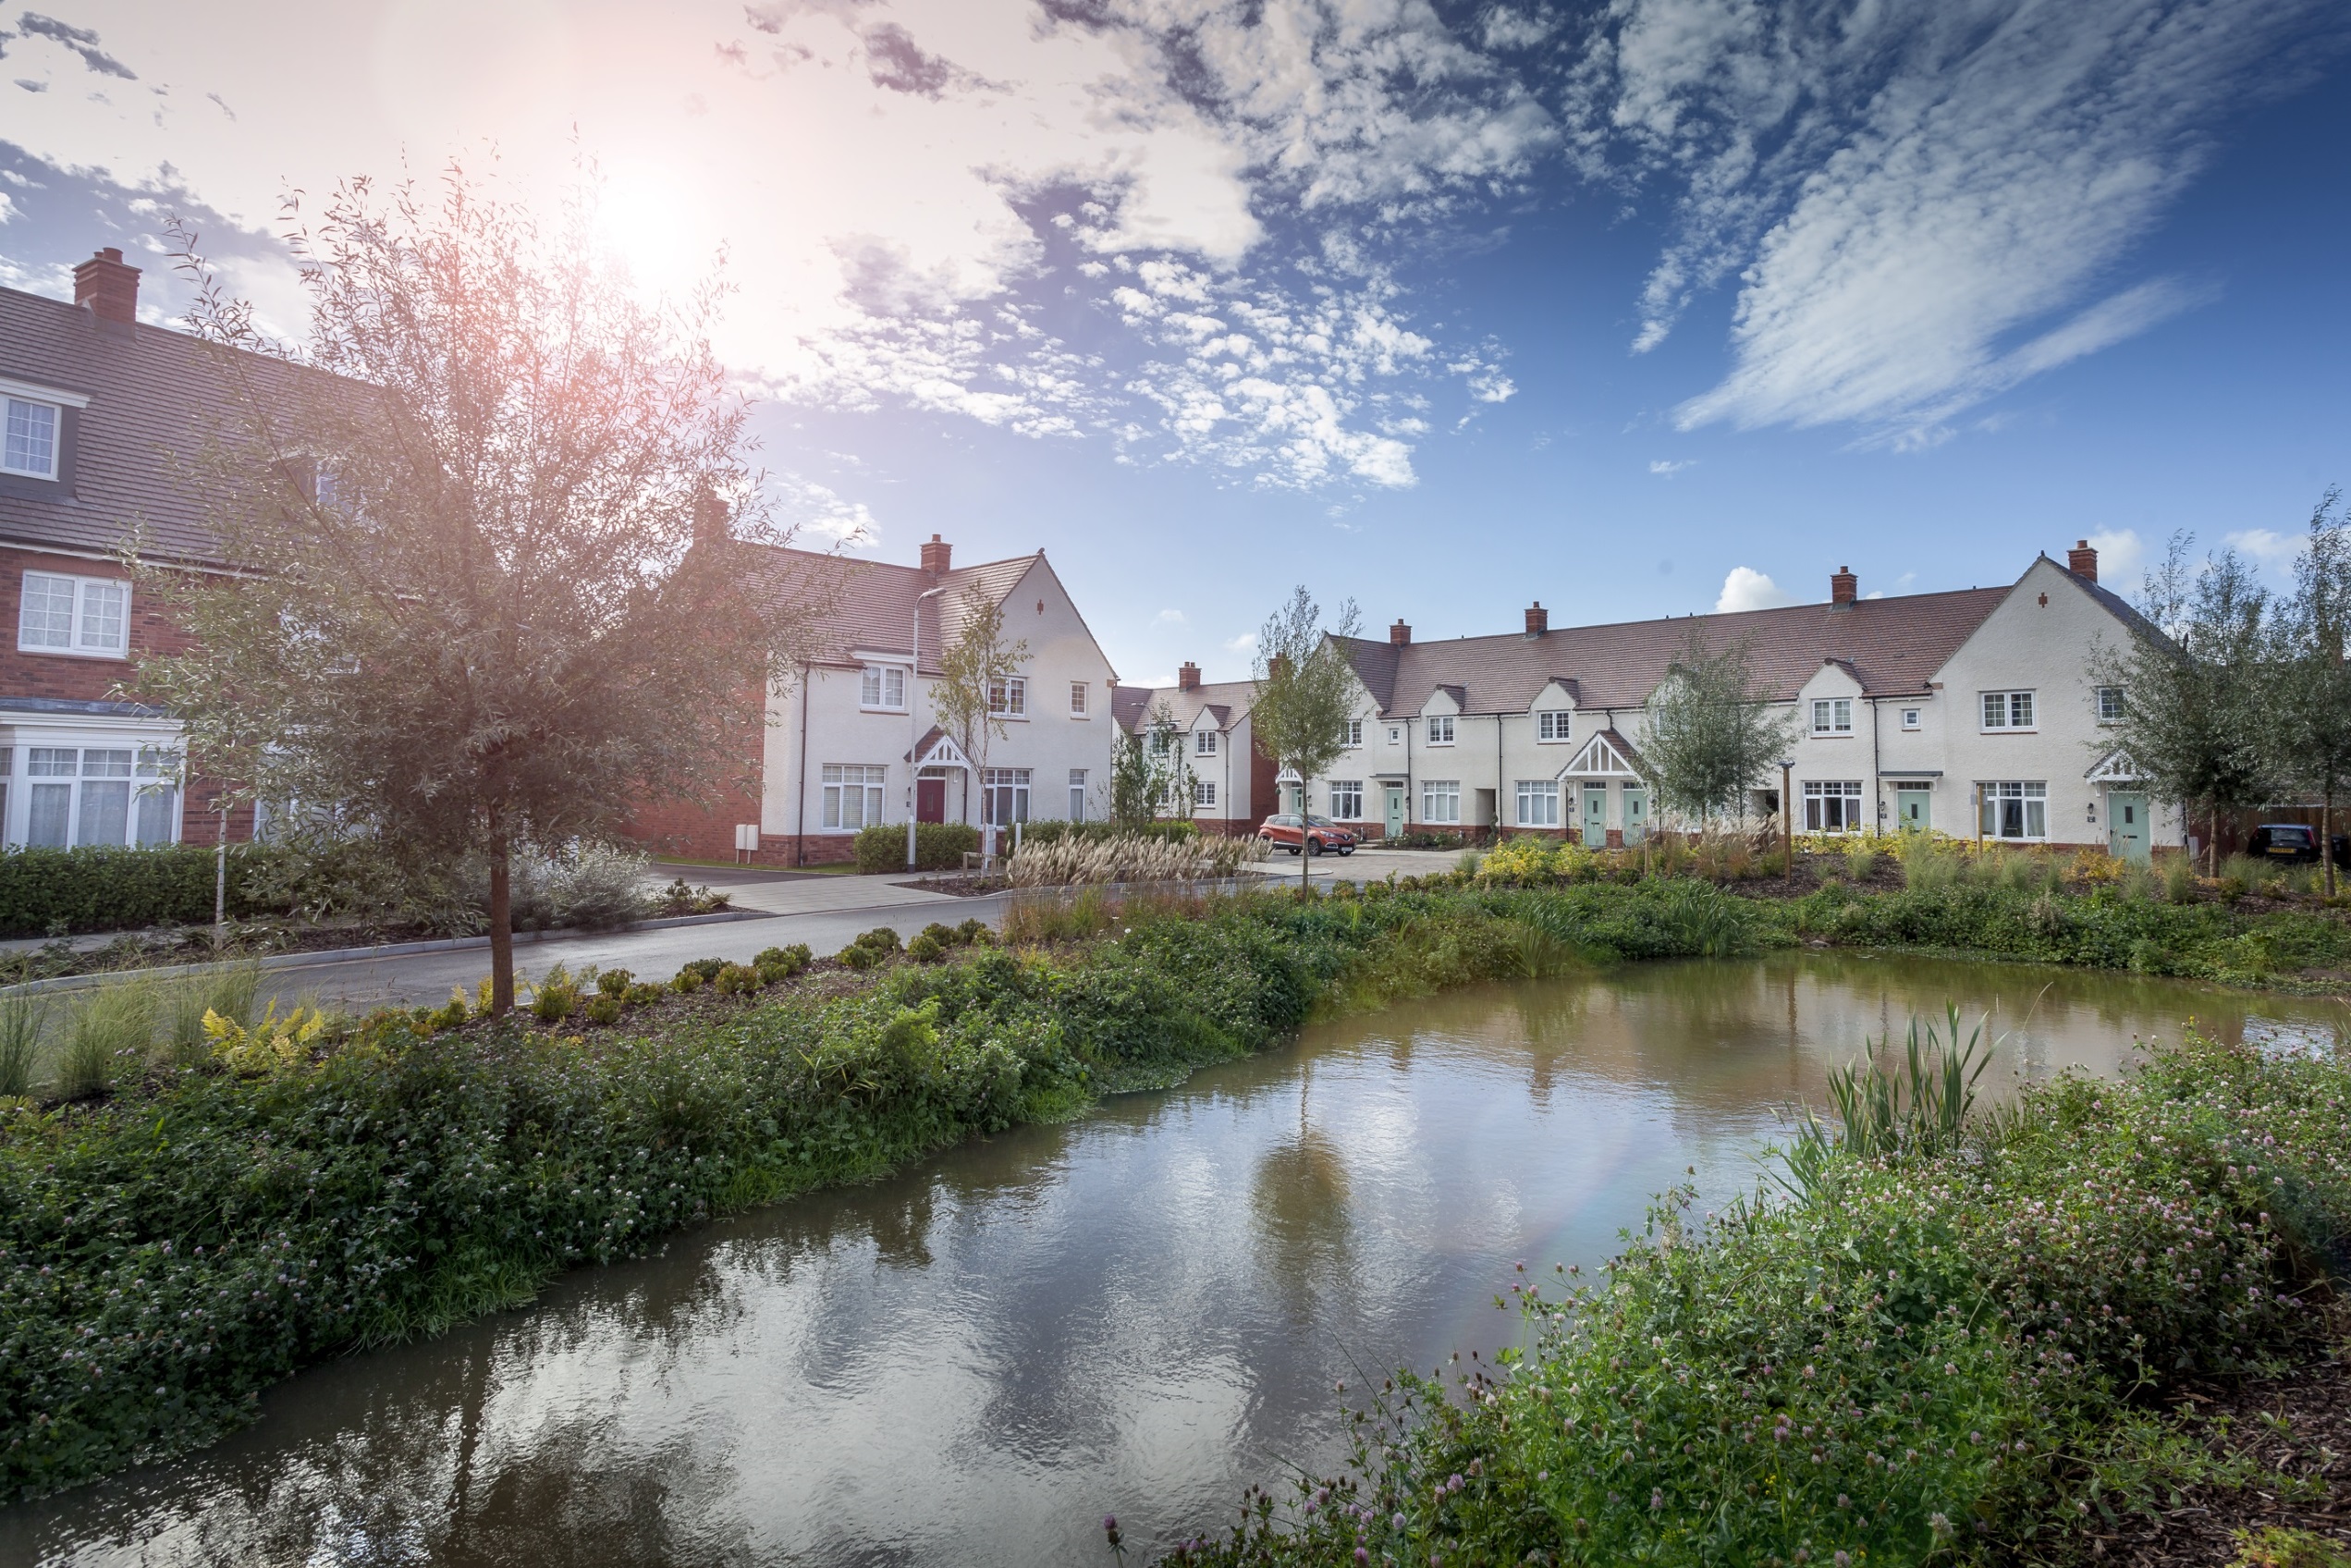 Loftus Garden Village Best New Development In Welsh Housing Awards